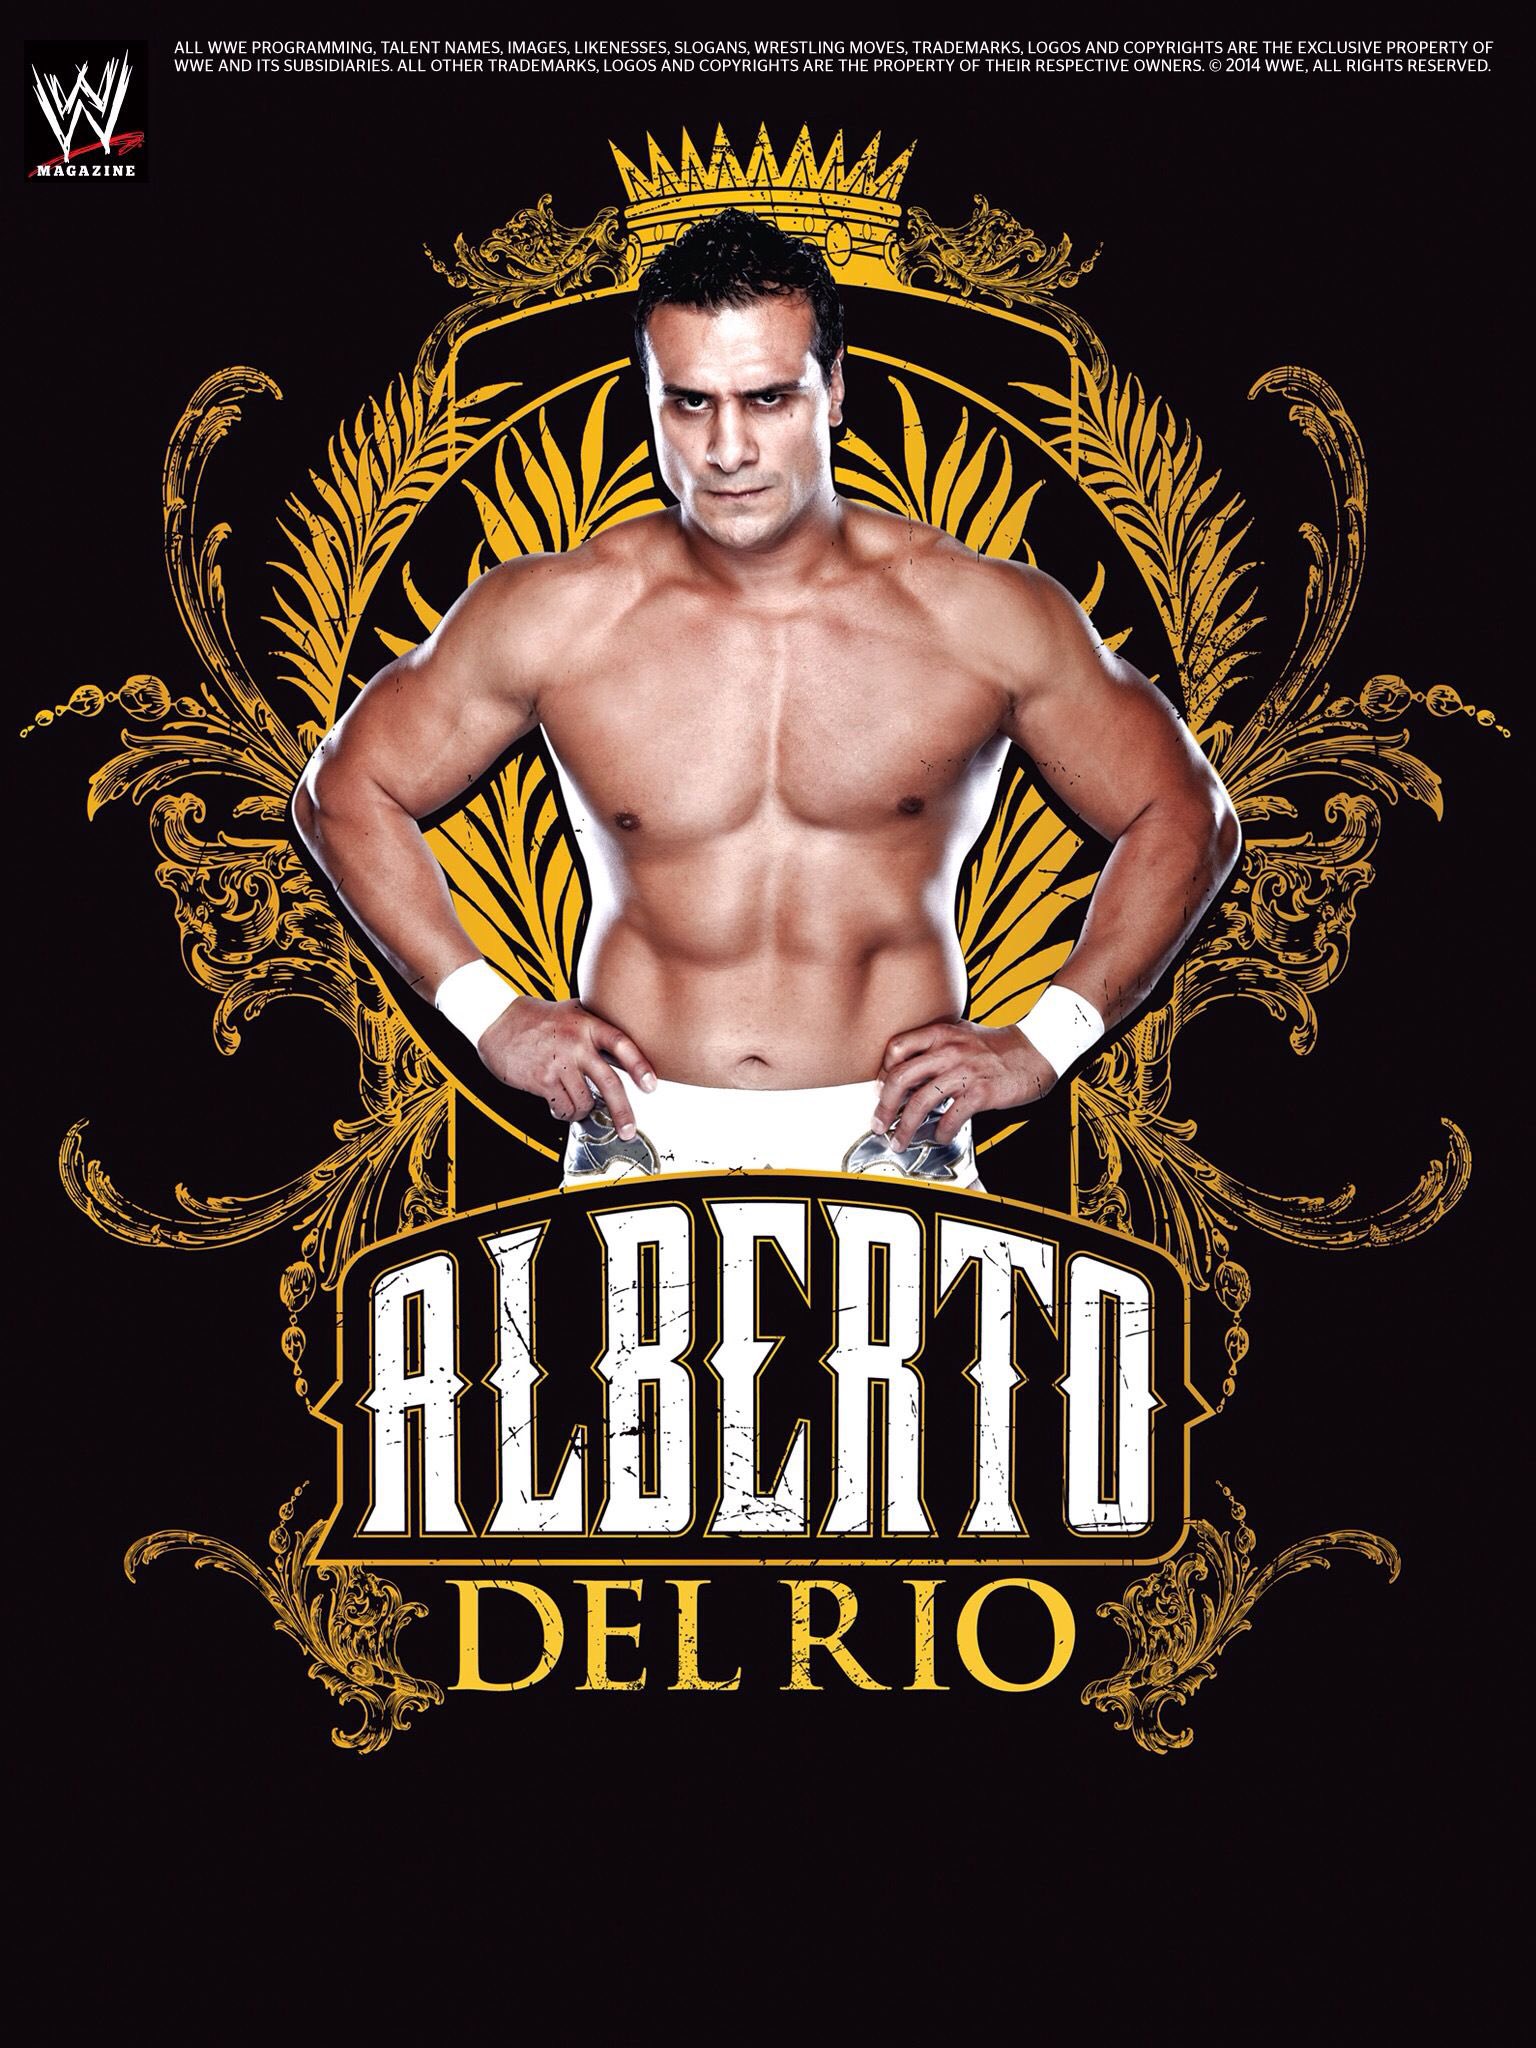 Alberto Del Rio Logo Wallpapers